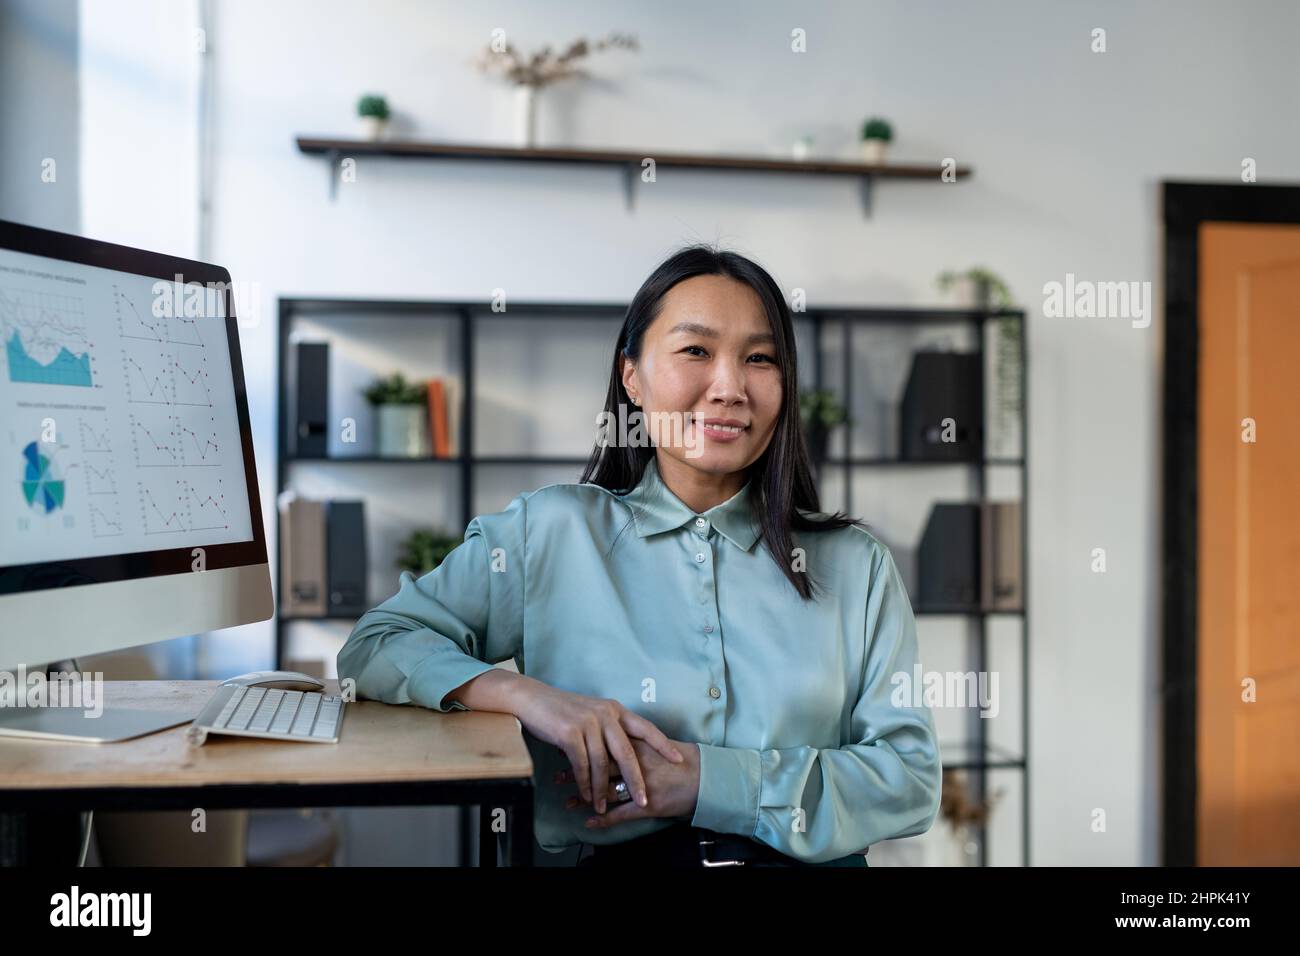 Junge asiatische Wirtschaftswissenschaftlerin in intelligenter Casualwear, die am Arbeitsplatz mit Computermonitor und Finanzdaten auf dem Bildschirm steht Stockfoto